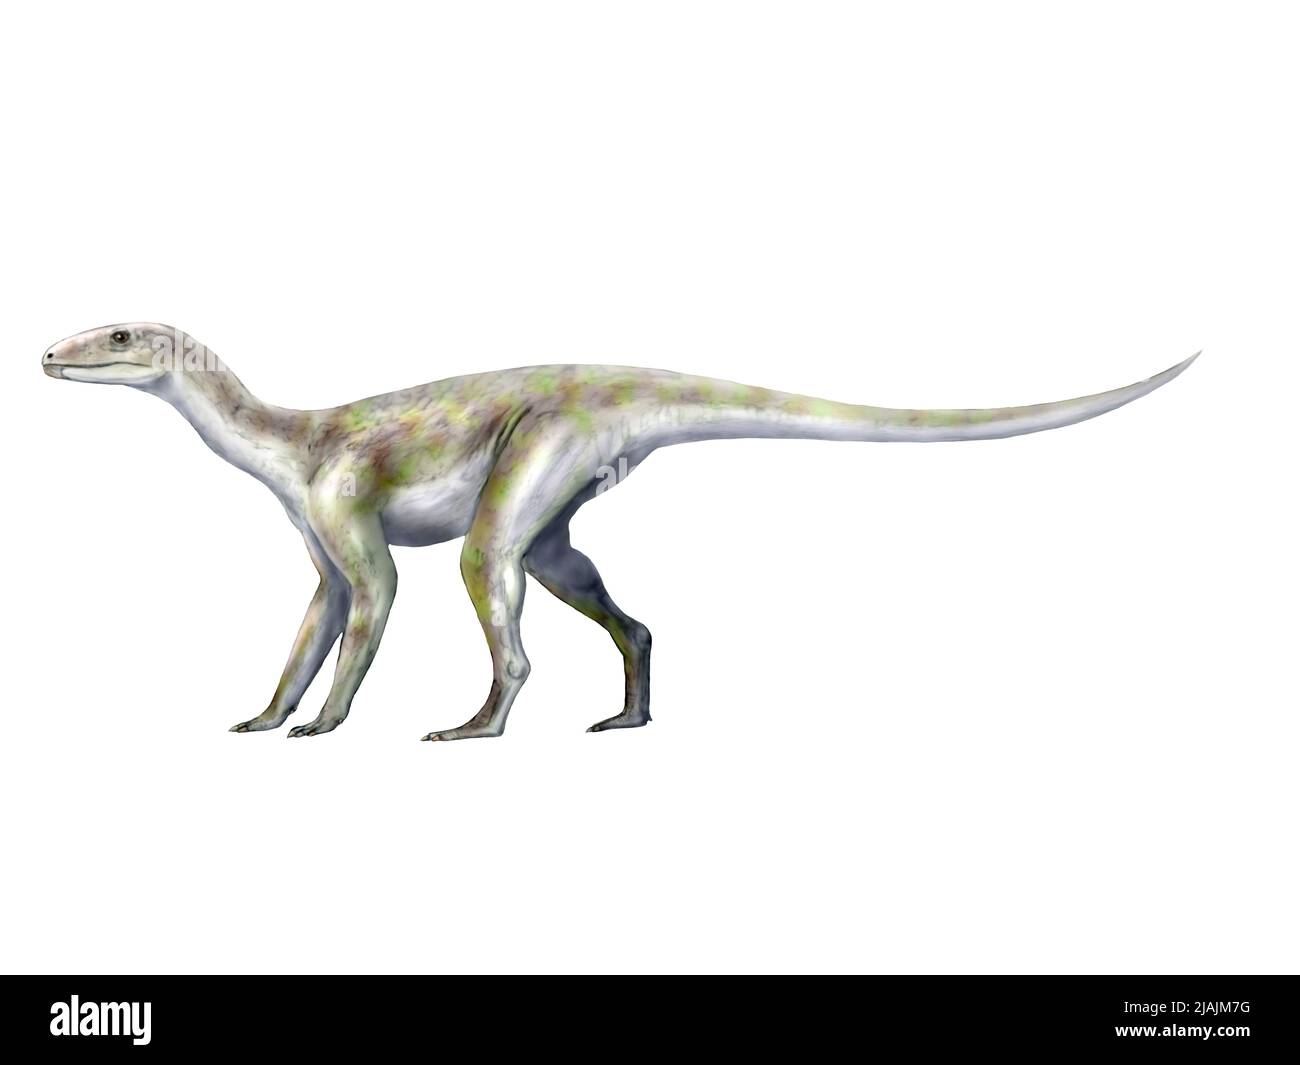 Silesaurus opolensis, eine Dinosaurier aus der späten Trias Polens. Stockfoto